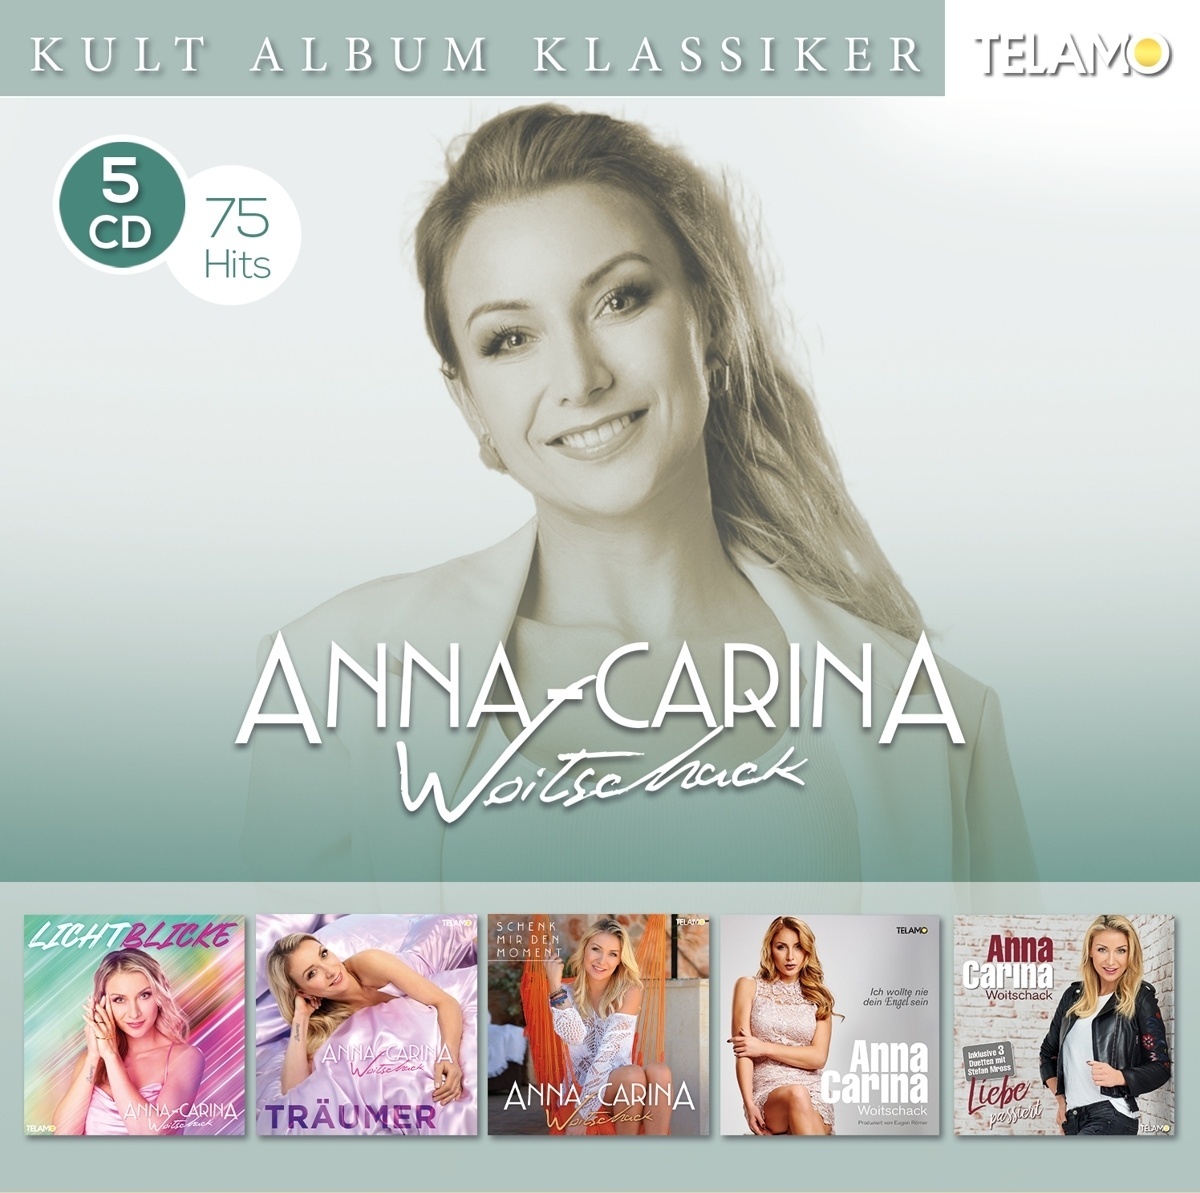 Kult Album Klassiker - Anna-Carina Woitschack. (CD)